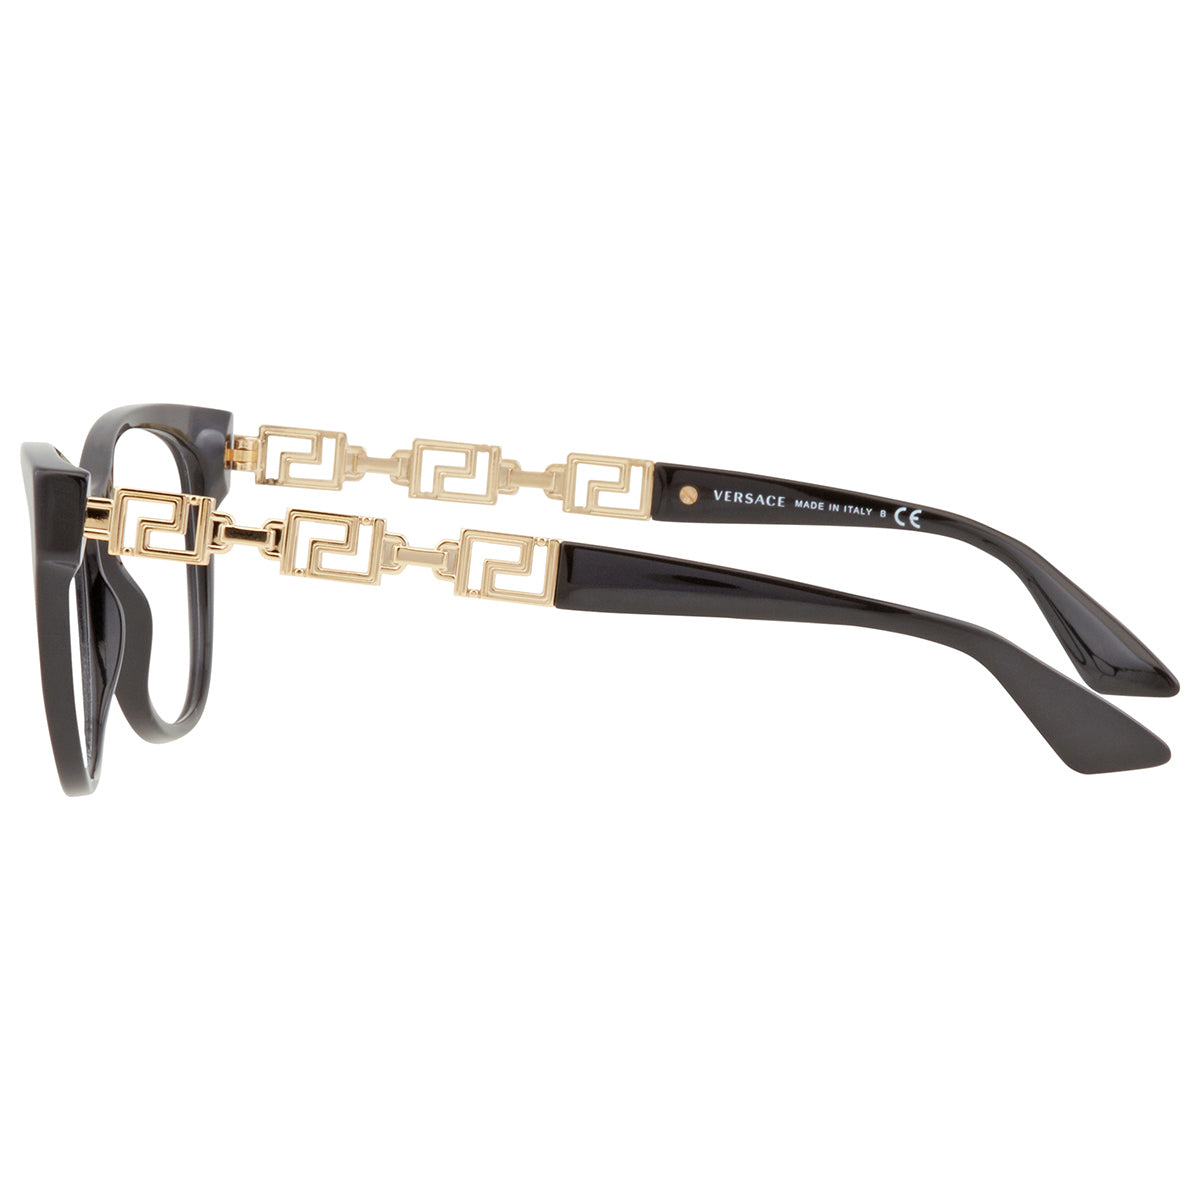 Versace VE3292-GB1-52 52mm New Eyeglasses